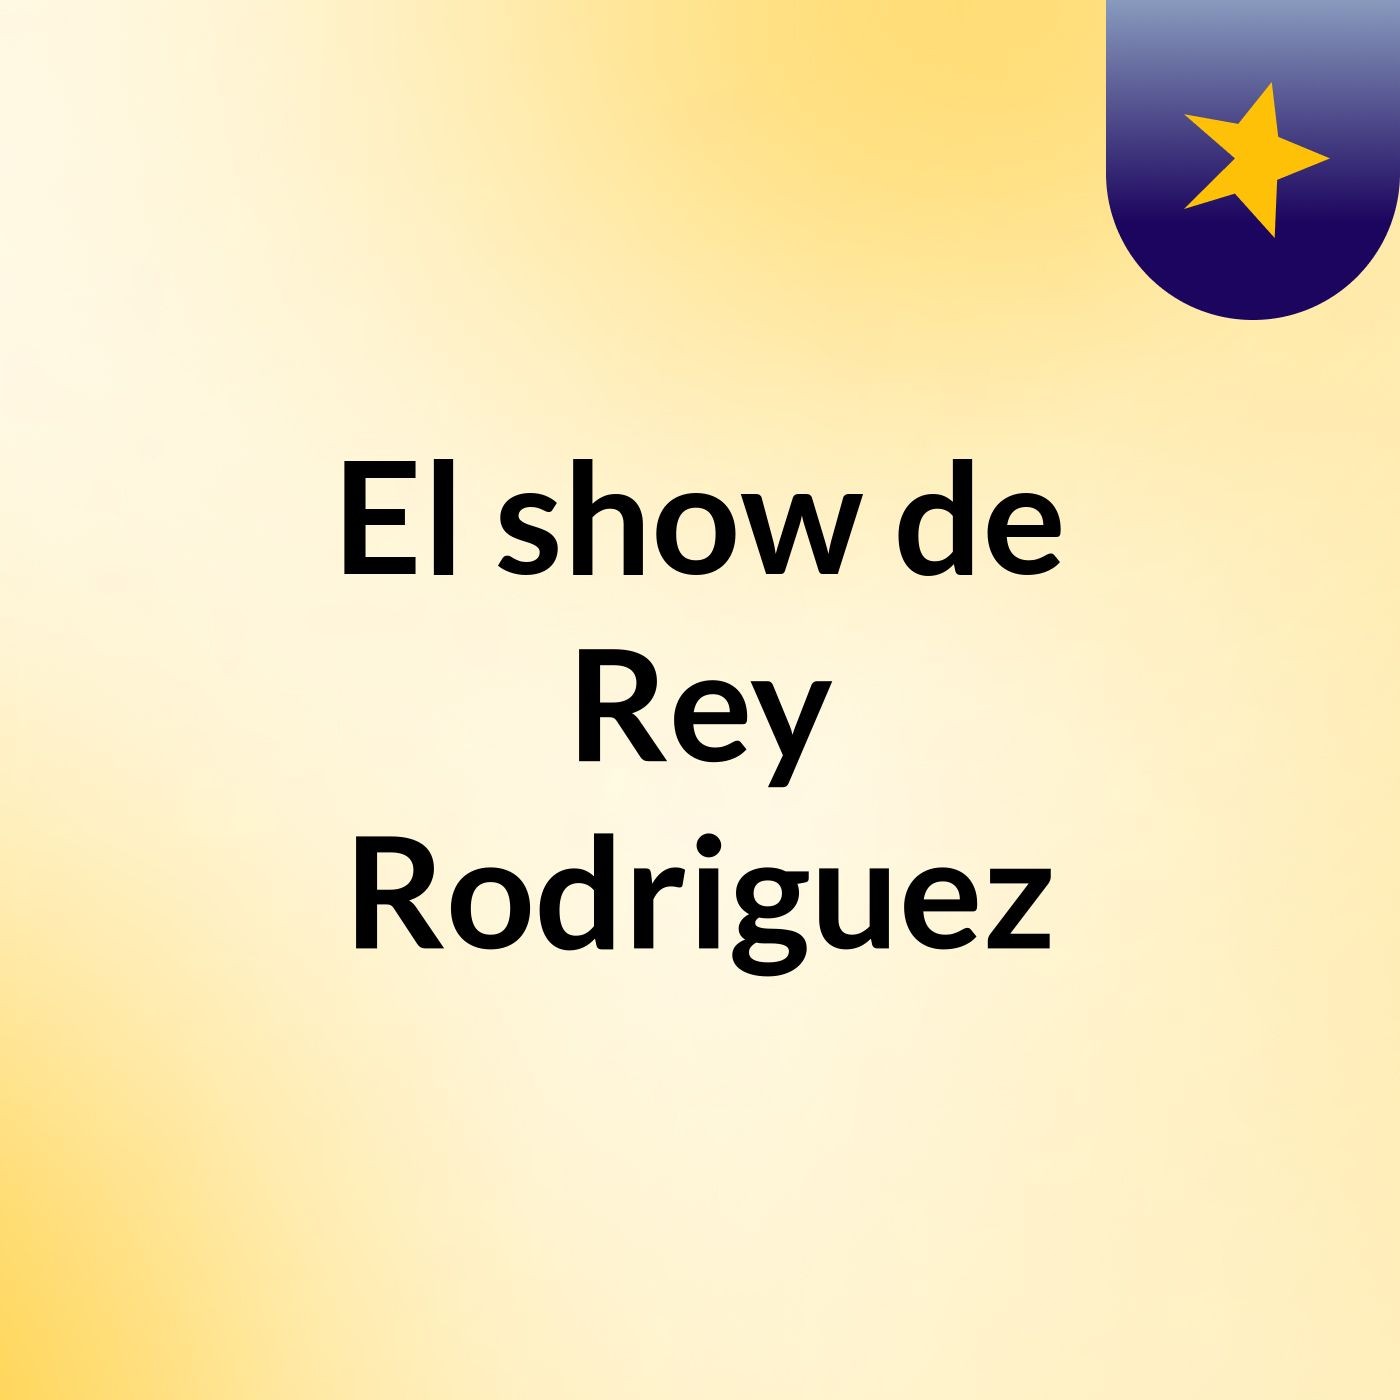 Episodio 6 - El show de Rey Rodriguez